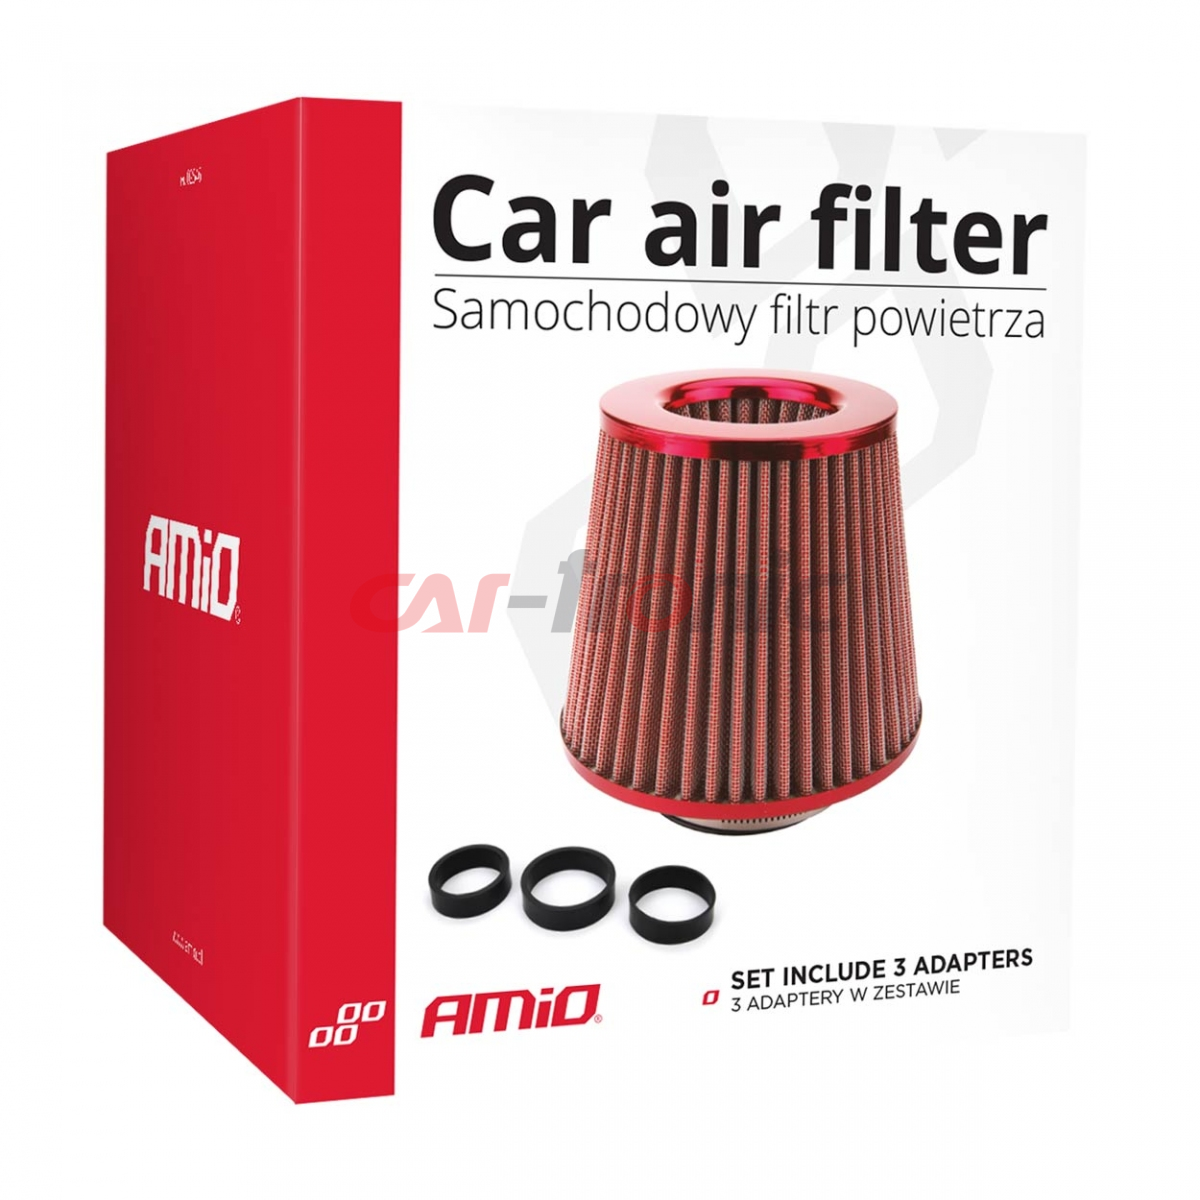 Filtr powietrza stożkowy uniwersalny czerwony + 3 adaptery AMIO-01042